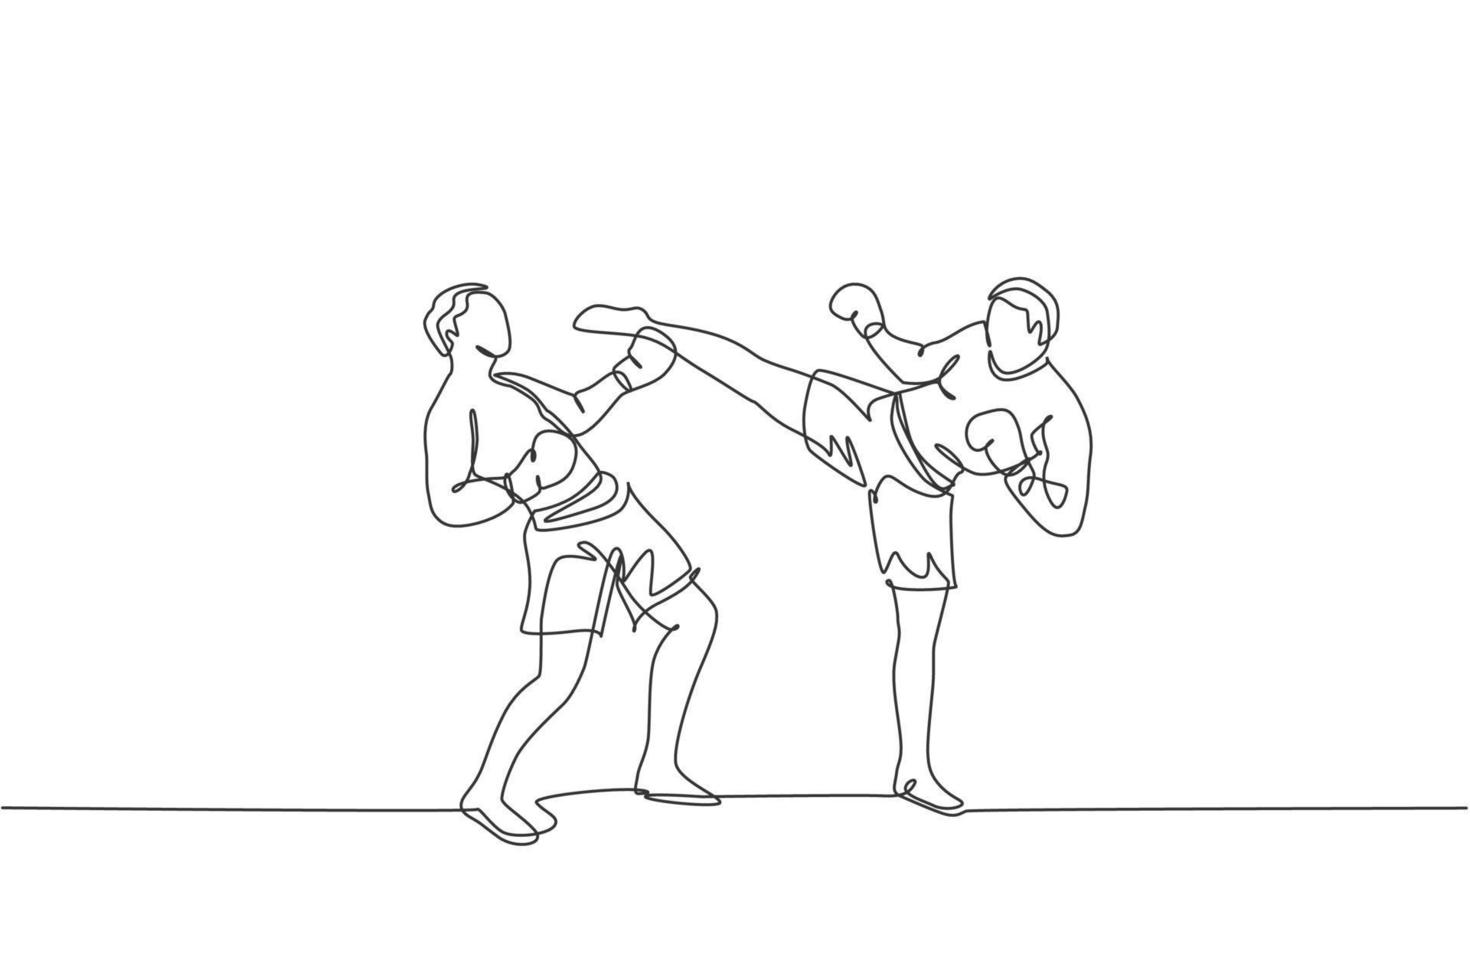 un dibujo de una sola línea de un joven y enérgico kickboxer practica una pelea de combate con su compañero en la ilustración vectorial de la arena de boxeo. concepto de deporte de estilo de vida saludable. diseño moderno de dibujo de línea continua vector